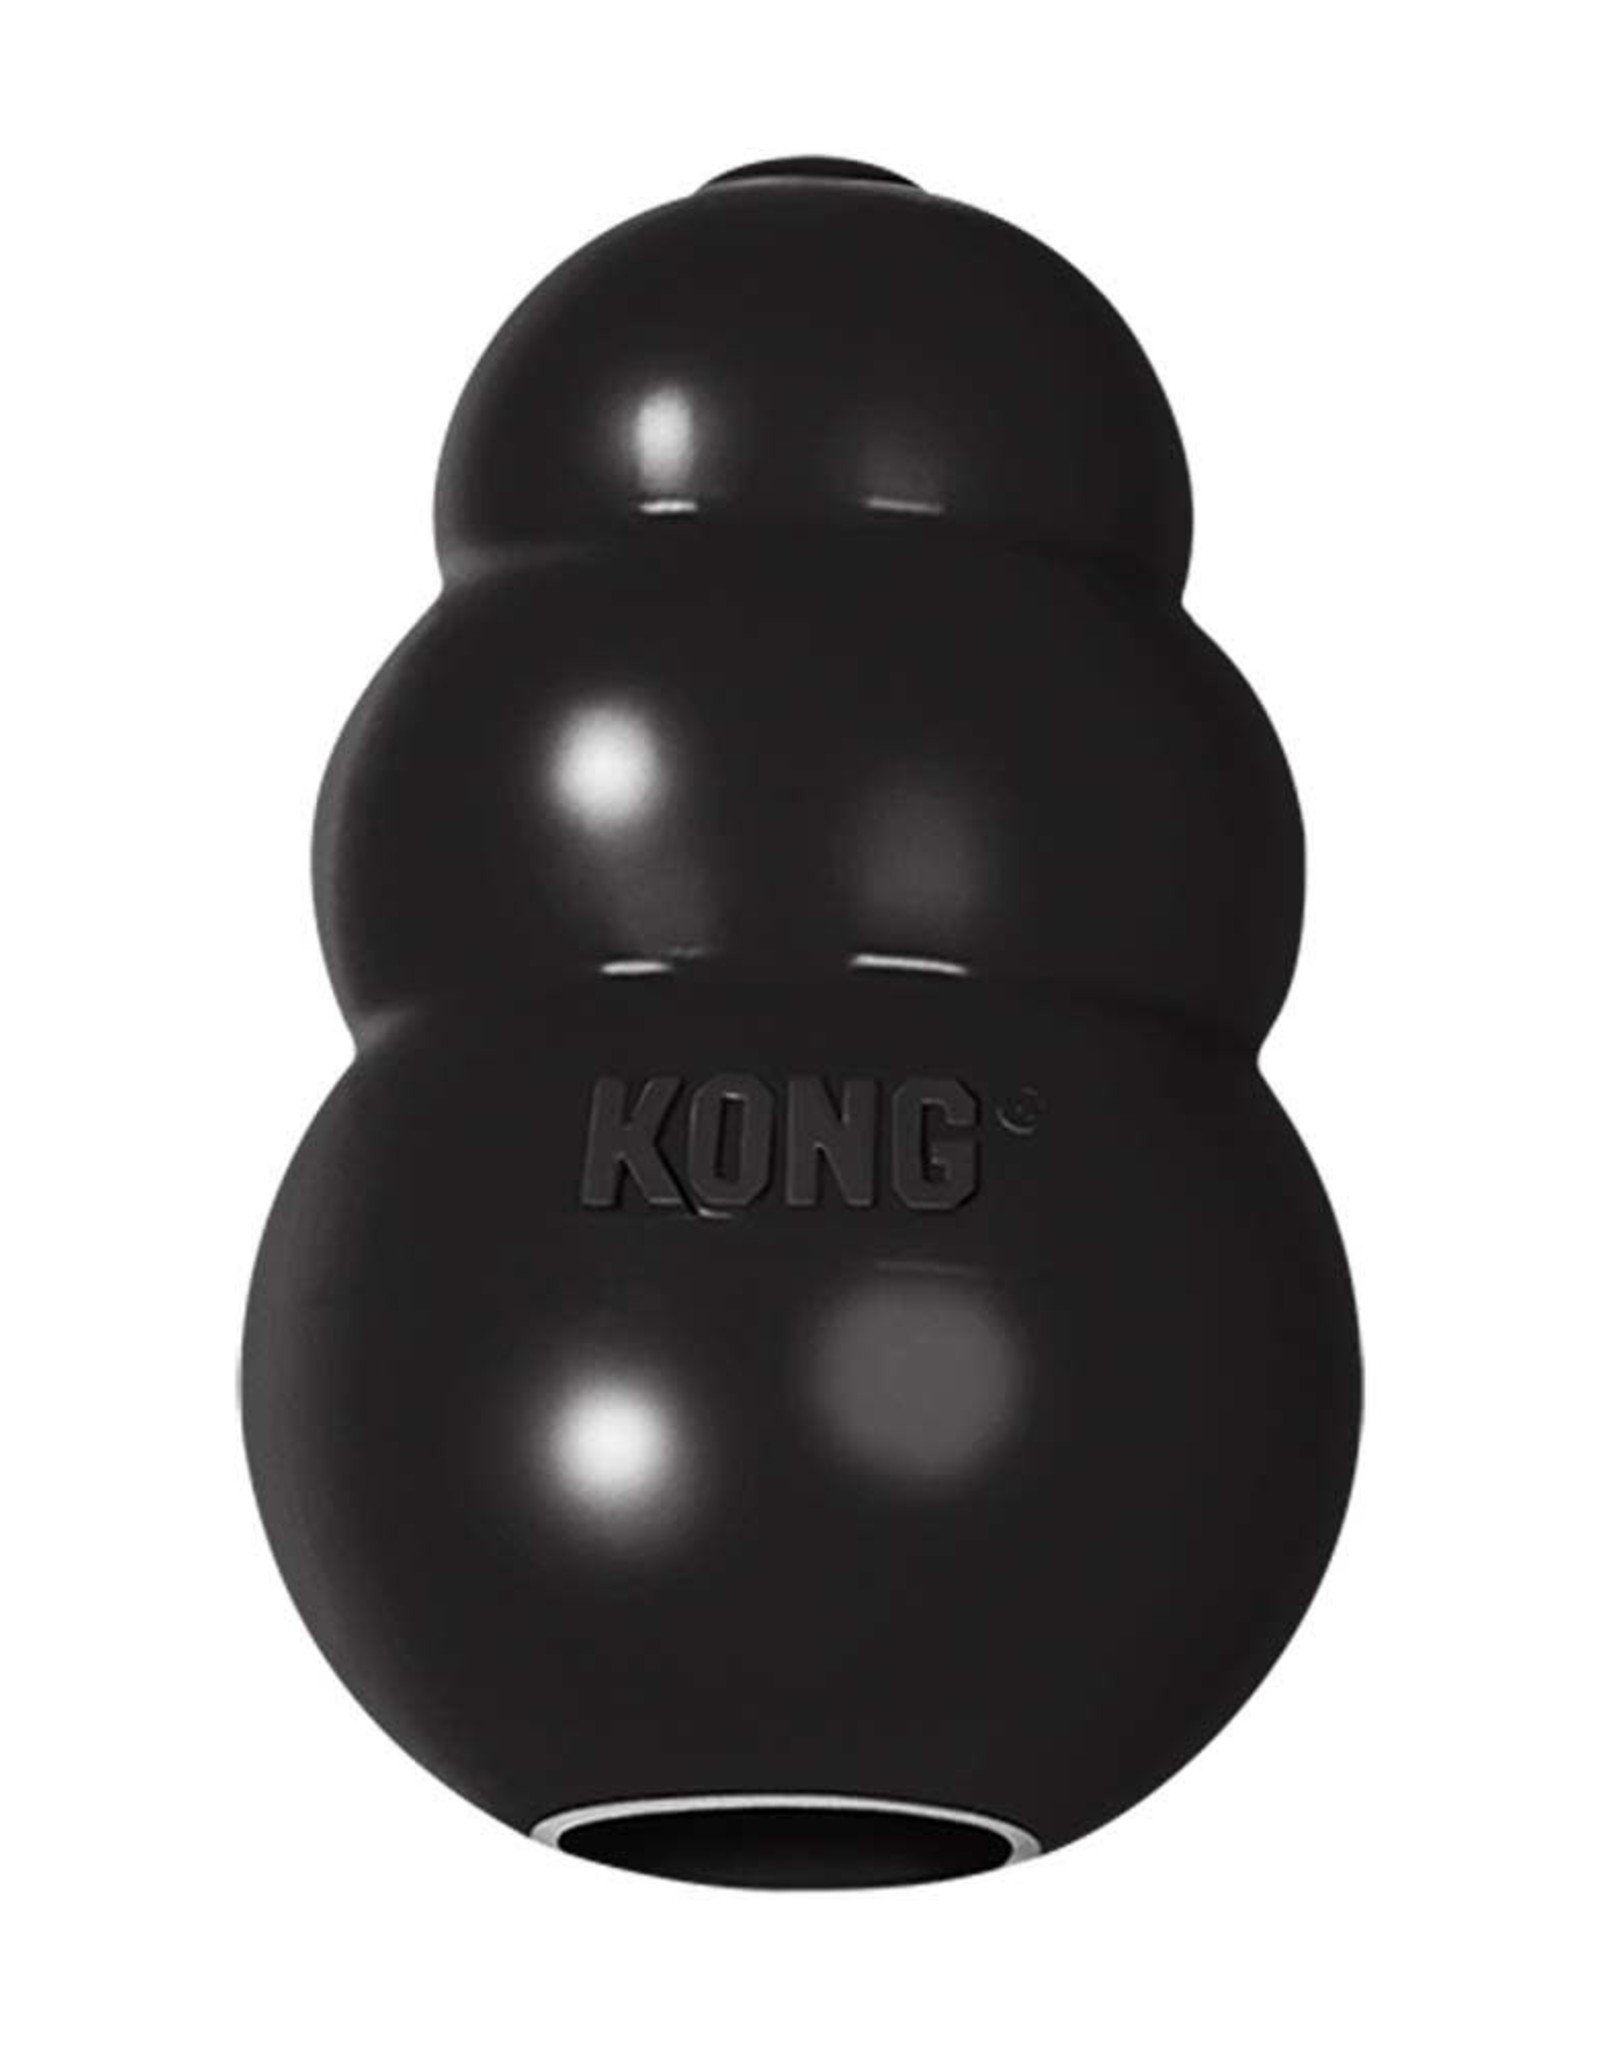 KONG COMPANY KONG EXTREME XLargeS KONG